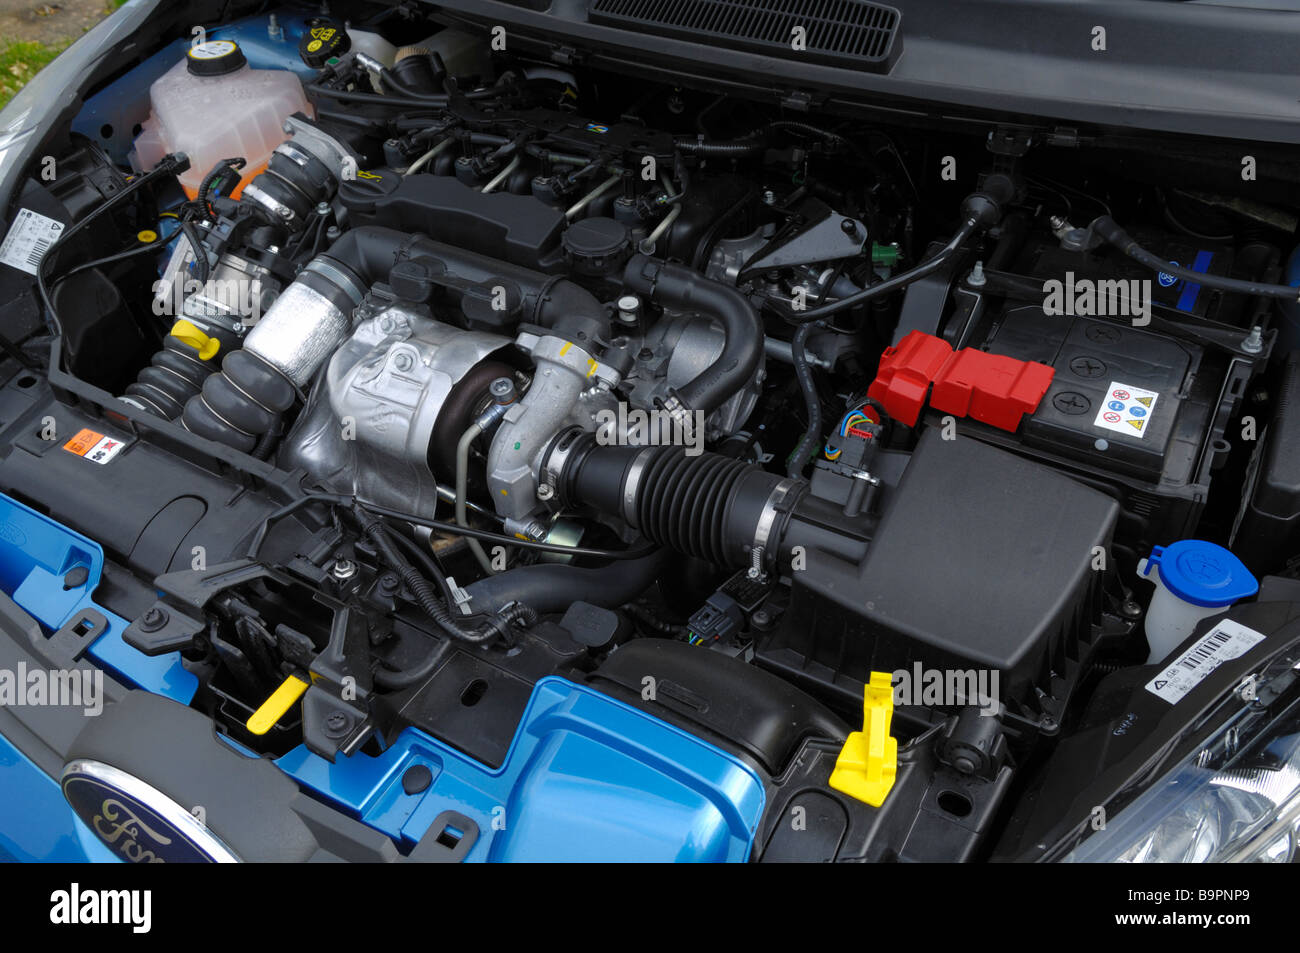 Le moteur diesel à partir d'un 2009 Ford Fiesta 1.6 TDCi ECOnetic, une des voitures les plus écologiques disponibles en Europe à son lancement en 2009, la production de seulement 98g/km de CO2. Banque D'Images